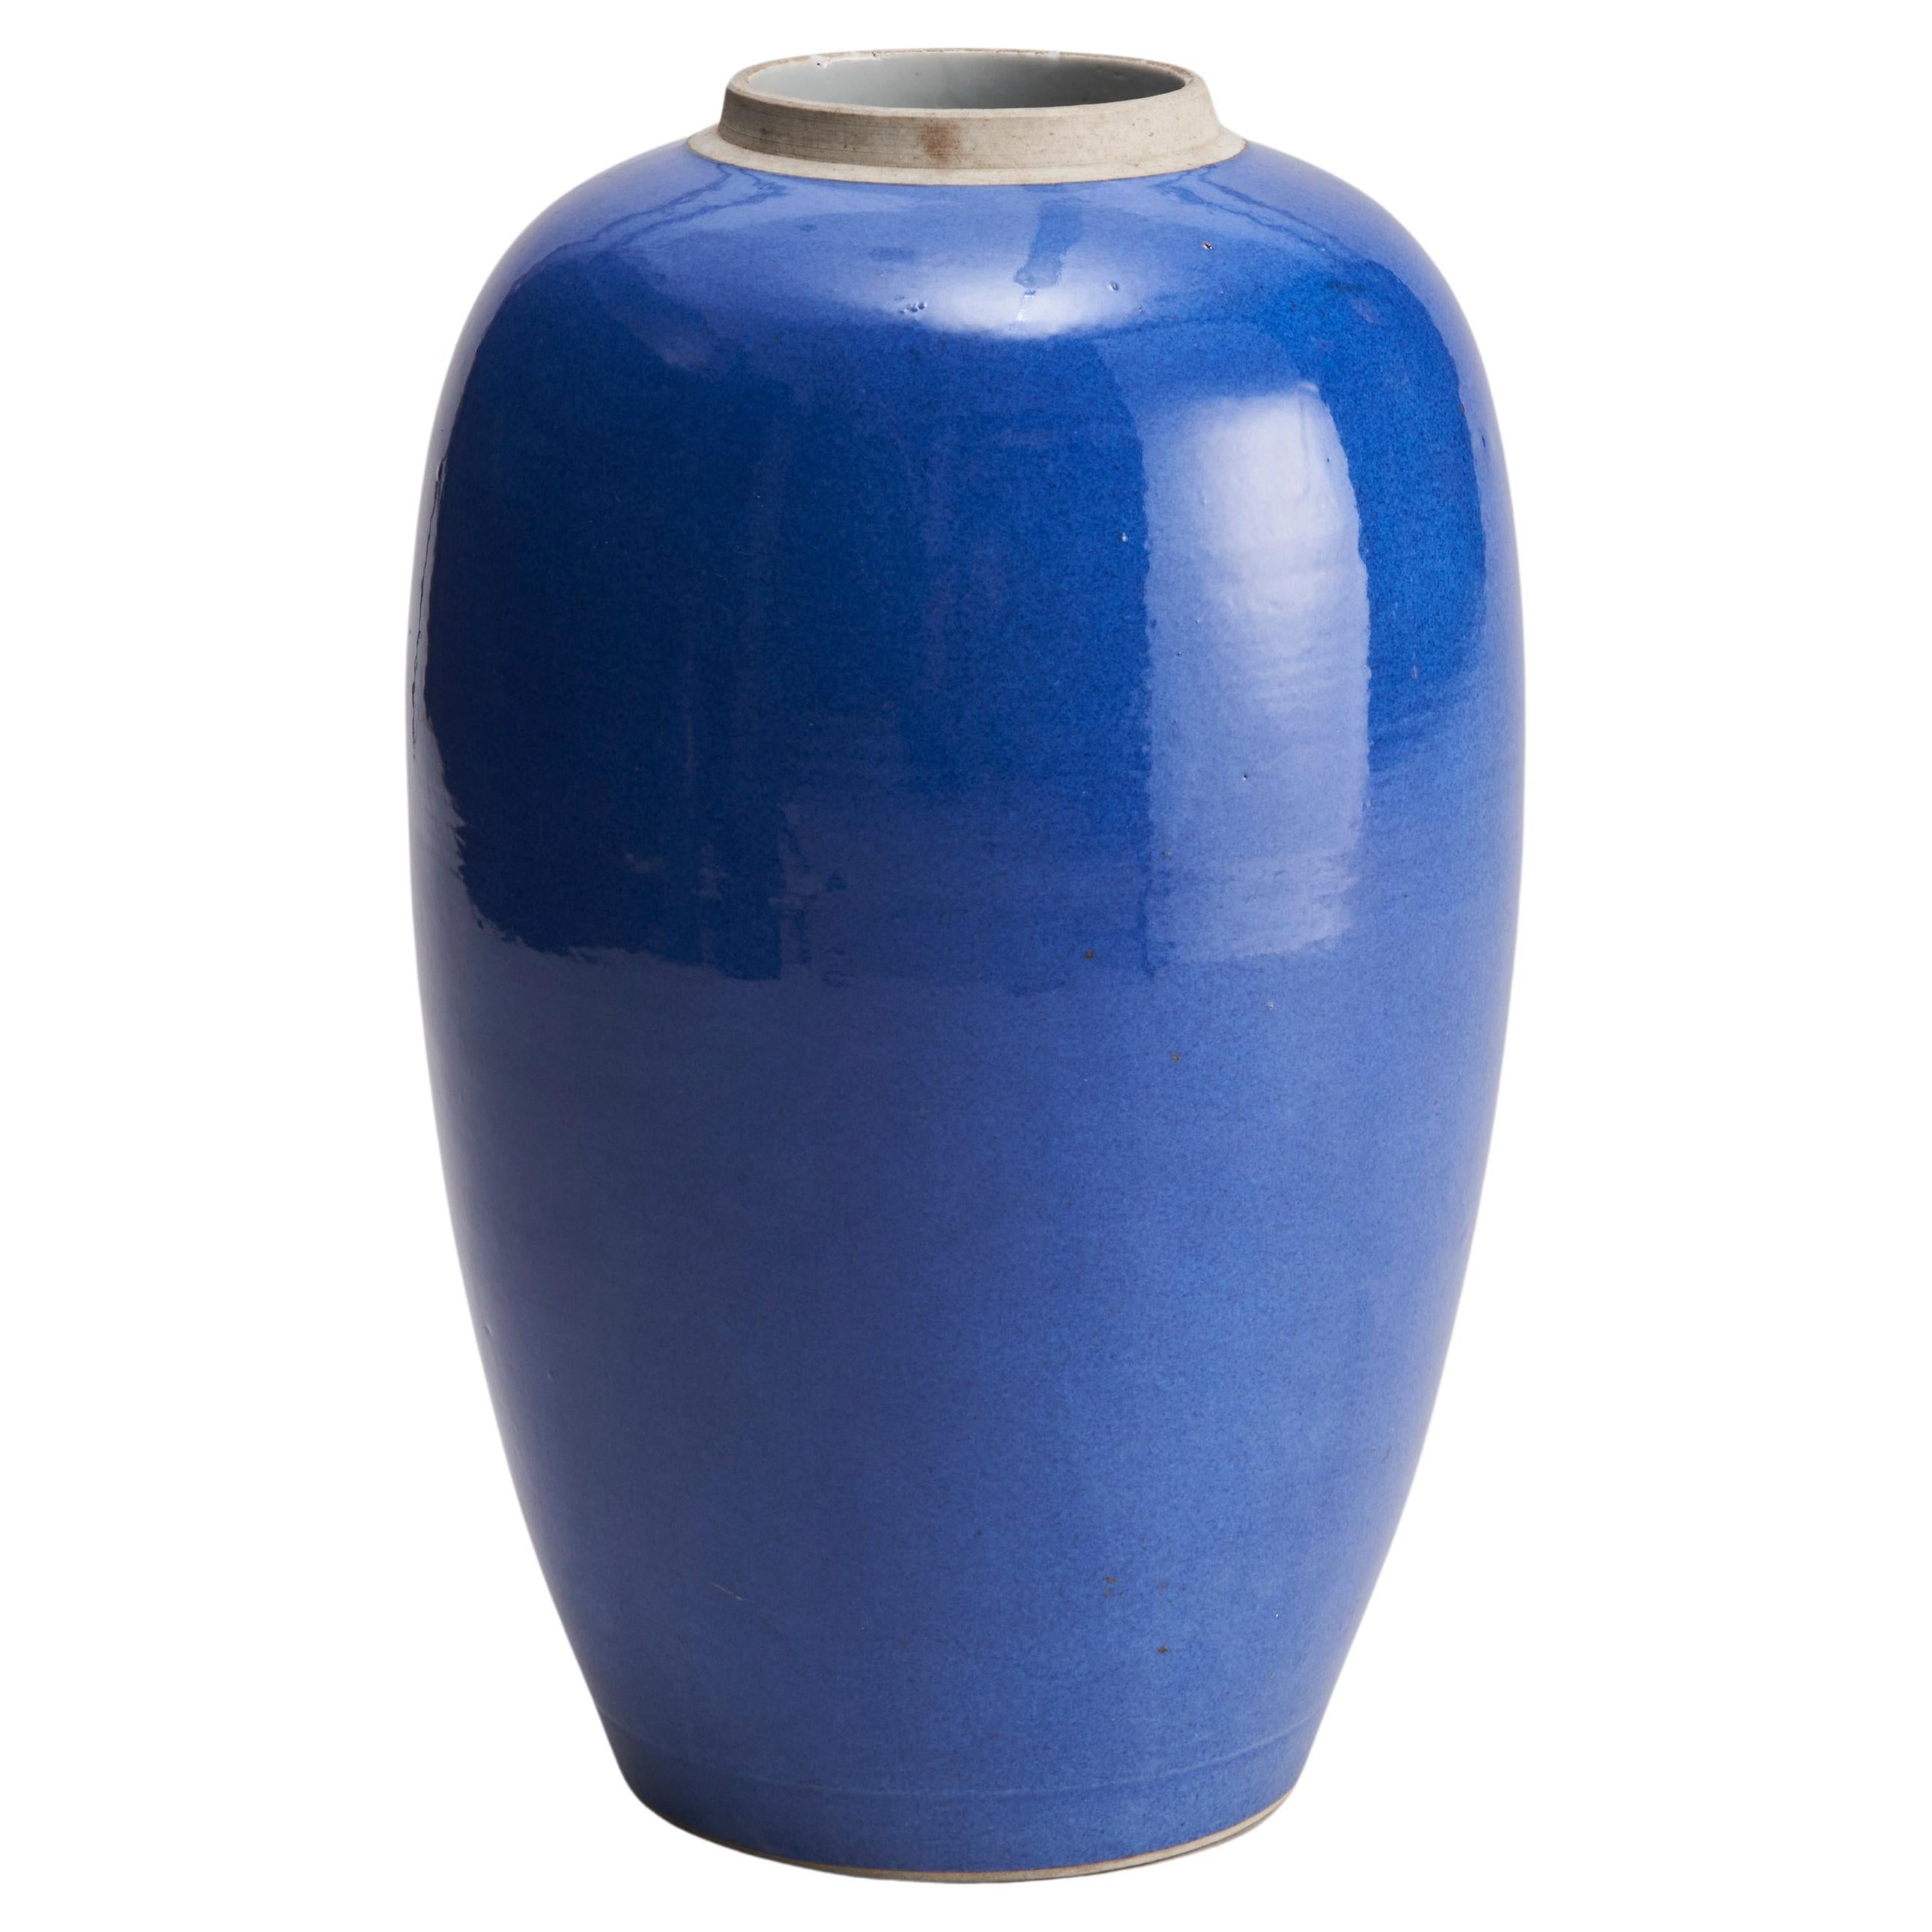 Grande jarre allongée en porcelaine bleu poudré du XIXe siècle